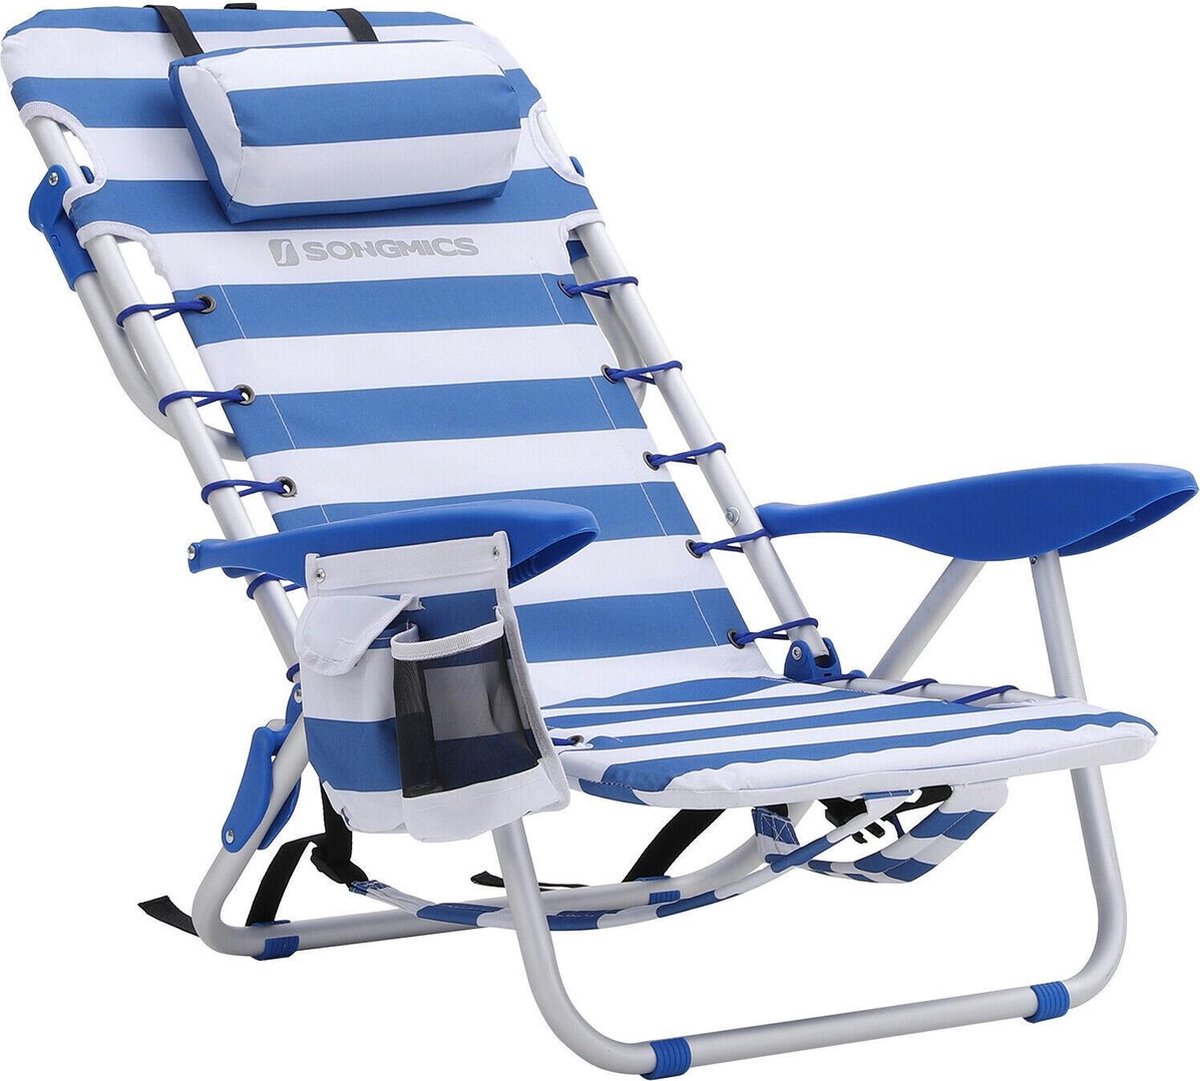 Draagbare strandstoel met afneembare hoofdsteun, opvouwbare strandstoel met rugleuning, verstelbare rugleuning tot 180°, met bekerhouder en zak